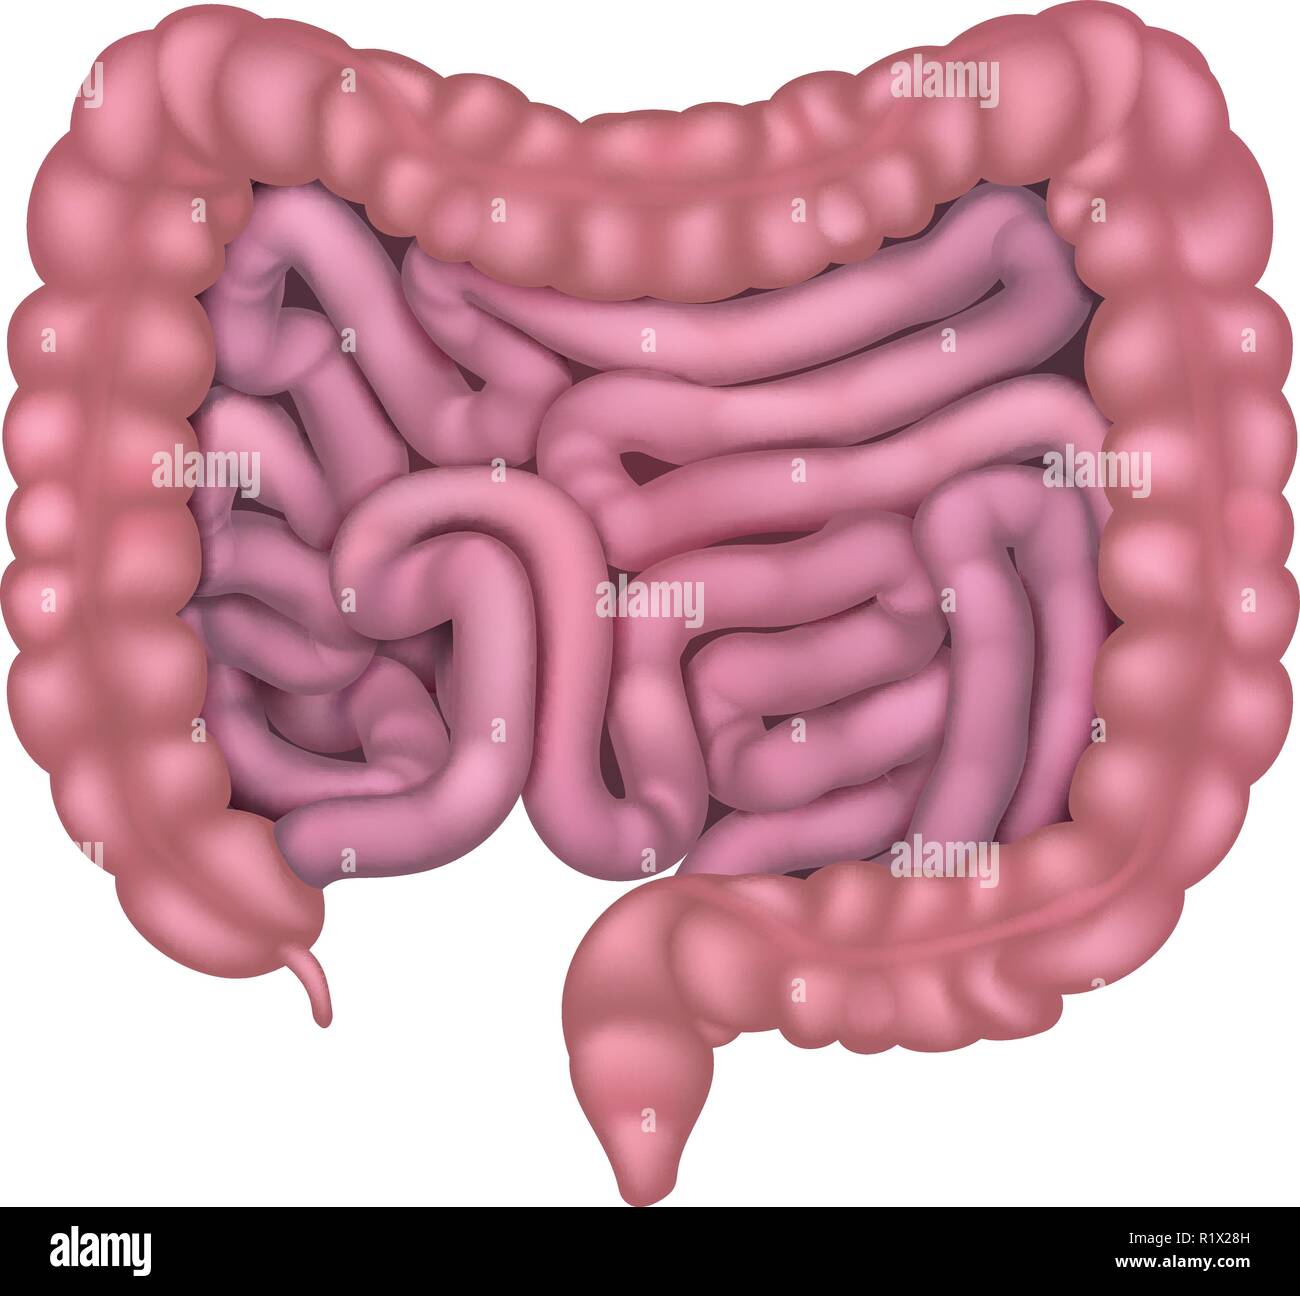 Intestini Gut apparato digestivo umano Illustrazione Vettoriale